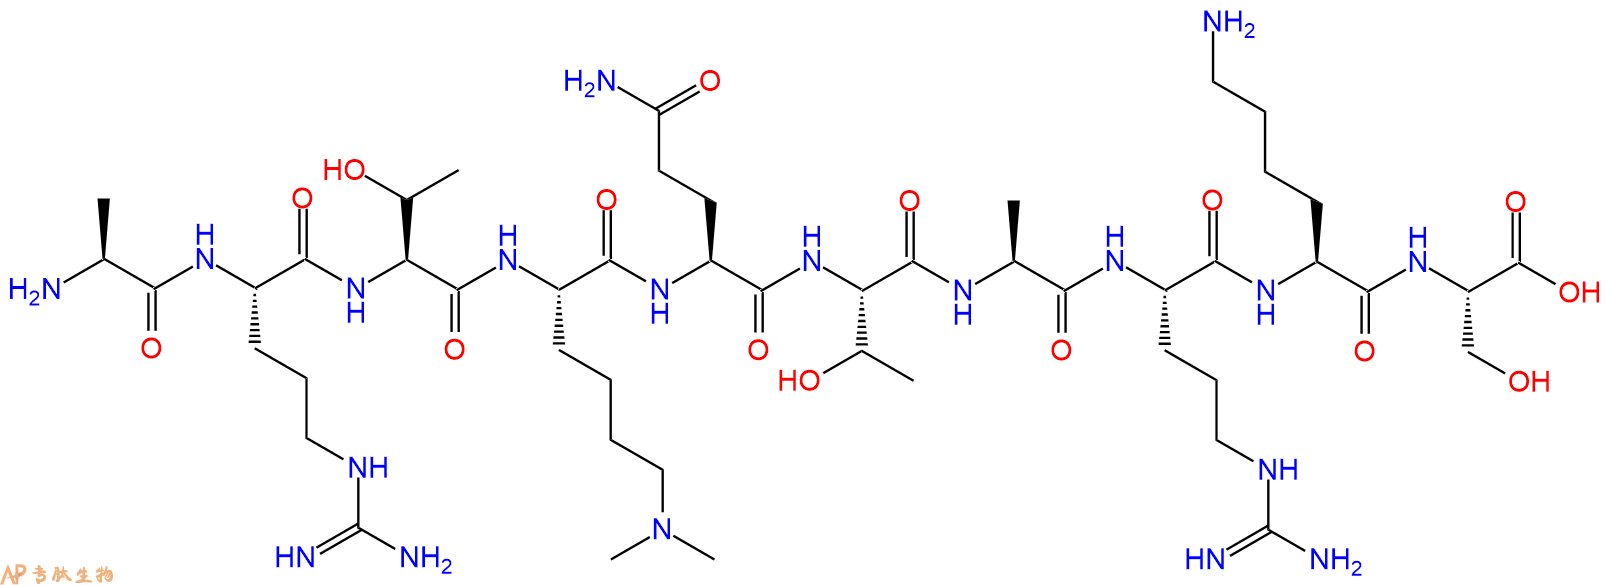 专肽生物产品组蛋白肽段[Lys(Me)24]-Histone H3(1-10), H3K4(Me2)